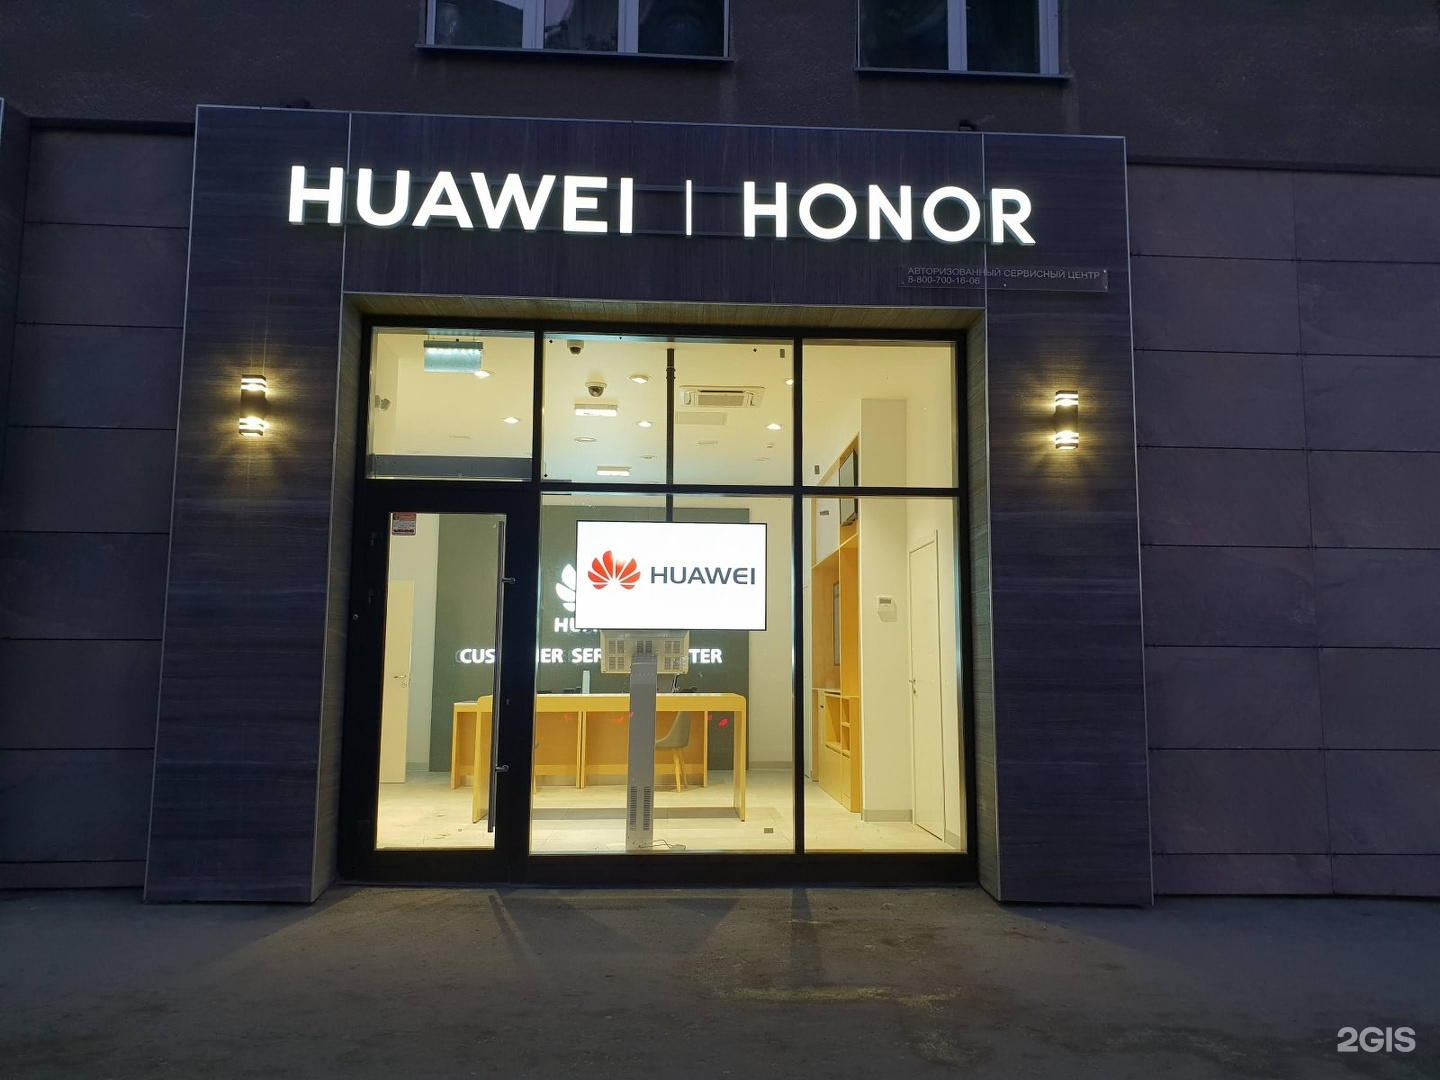 Сервисный huawei honor. Сервисный центр Huawei. Honor офис. Huawei Honor сервисный центр. Офис хонор в Москве.